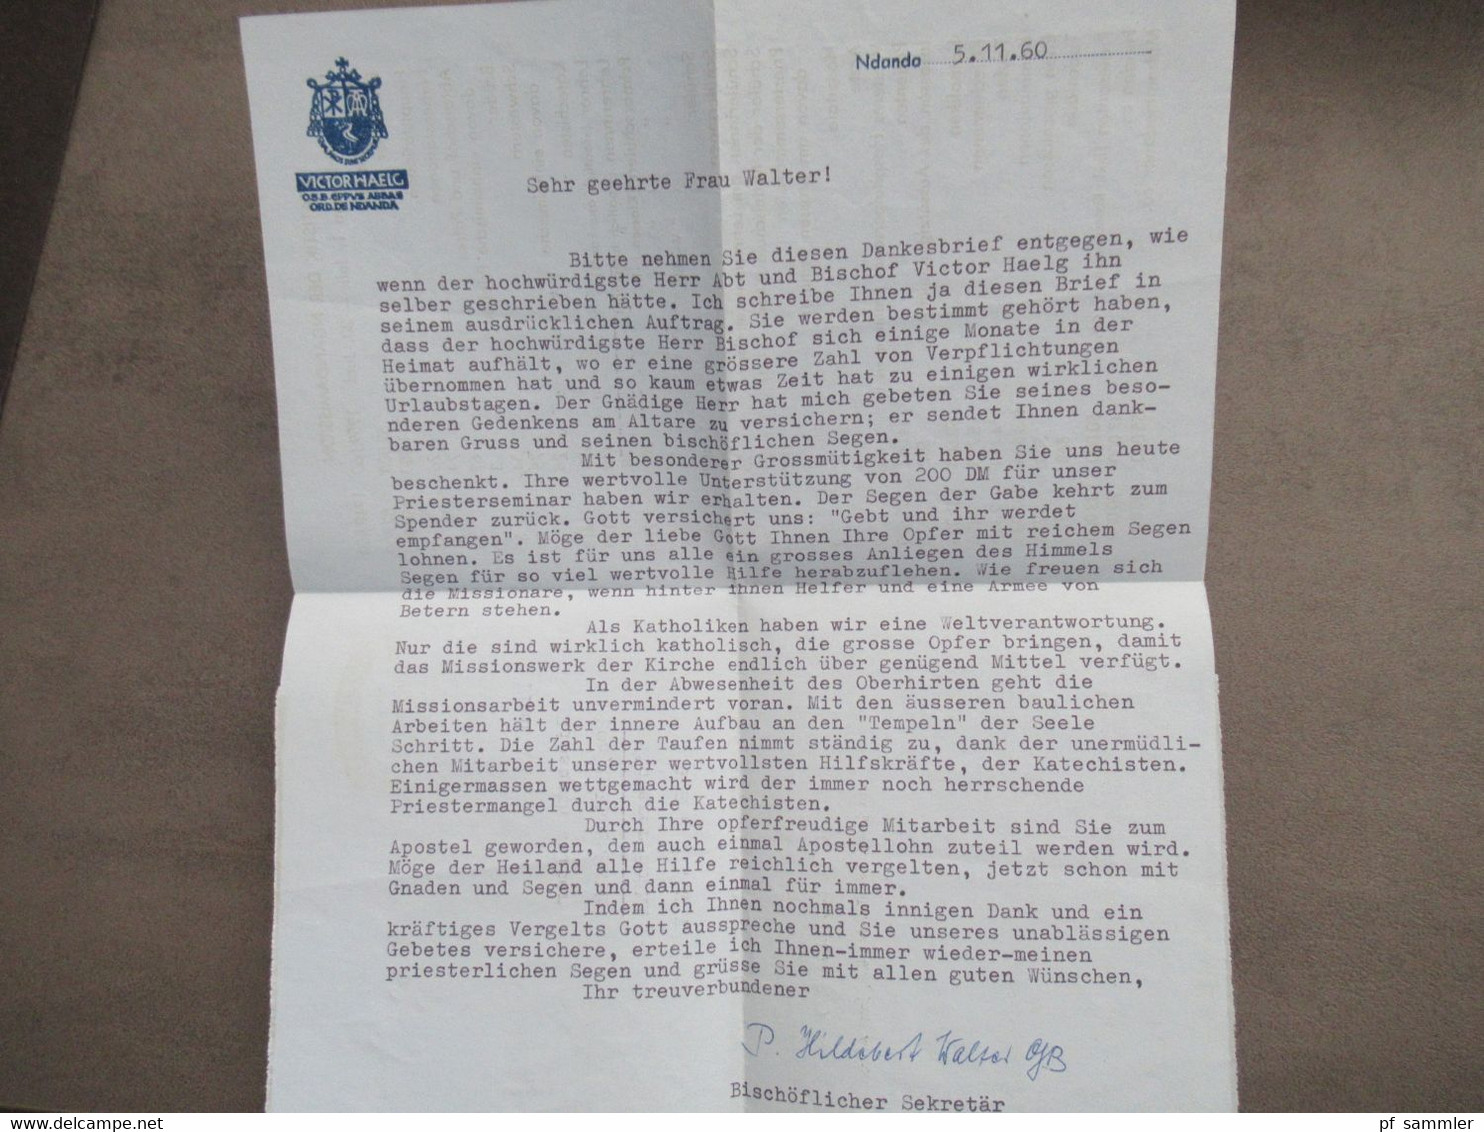 GB Kolonie Uganda 1960 Air Mail Aerogramme mit Statistik der Ndandamission Brief vom Bischöflichen Sekretär